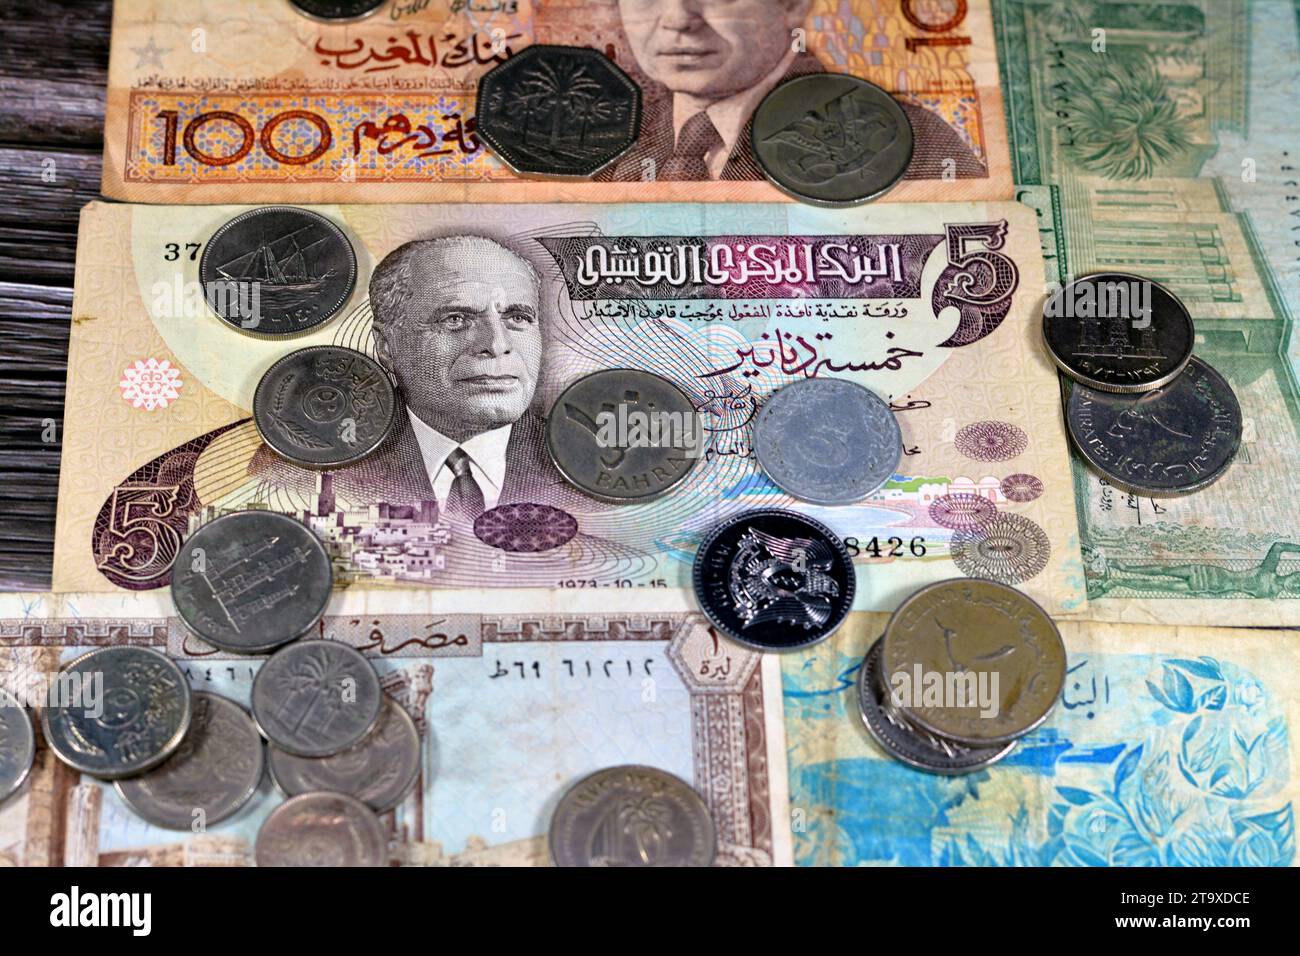 Collection de billets et pièces de monnaie Old Arabian de différents pays, Tunisie, Algérie, Maroc, Liban, et d'autres pays arabes, vintage re Banque D'Images